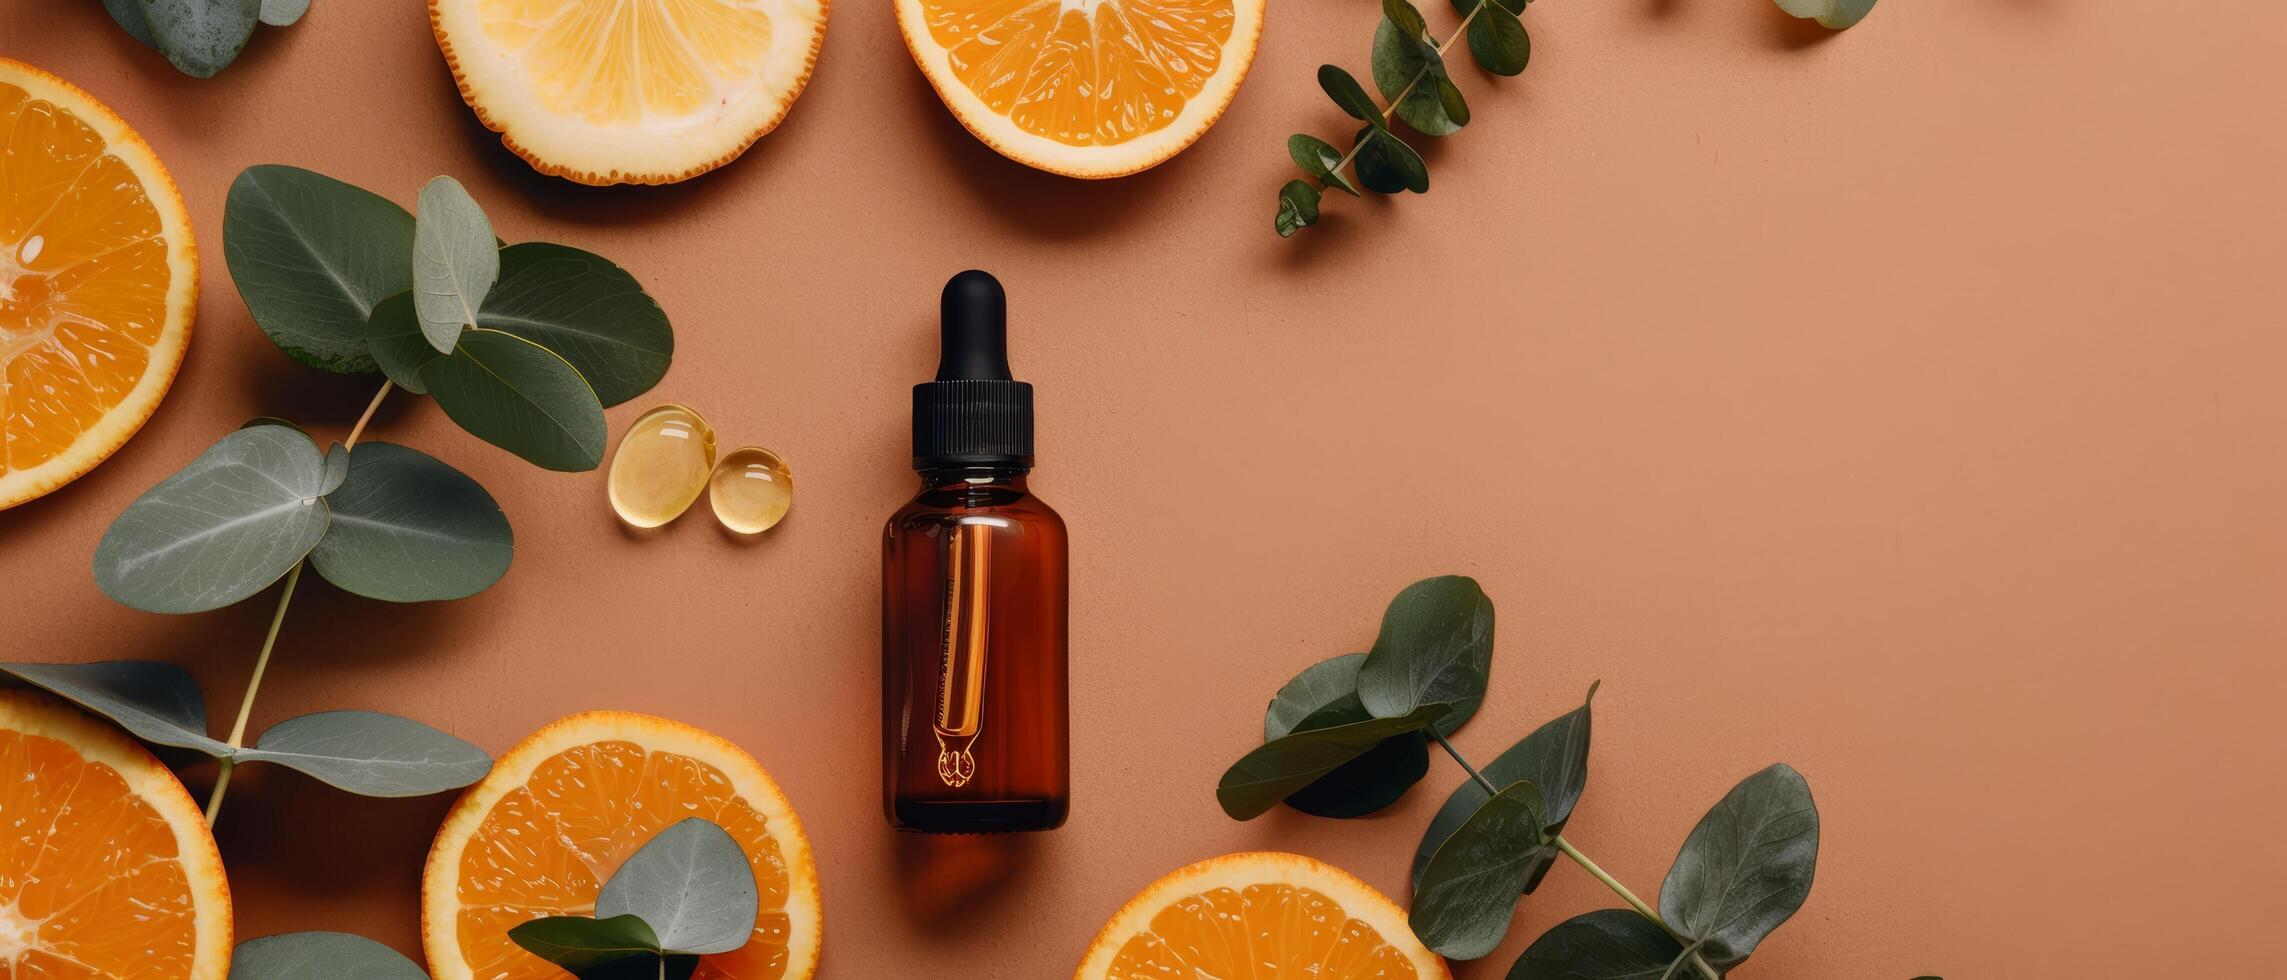 botella de esencial petróleo con naranjas y eucalipto hojas foto